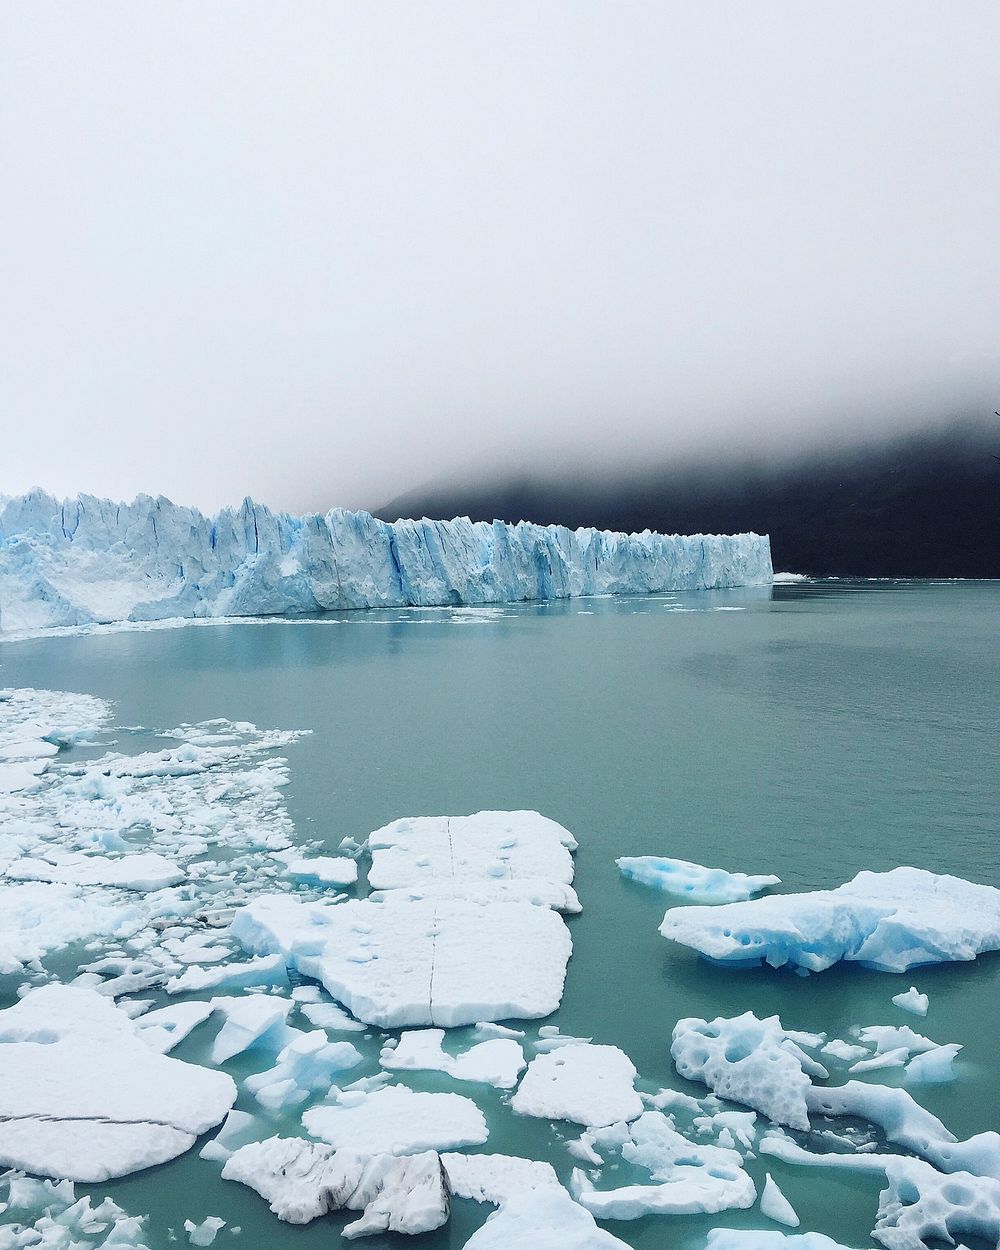 Perito Moreno Glacier. Original public domain image from Wikimedia Commons